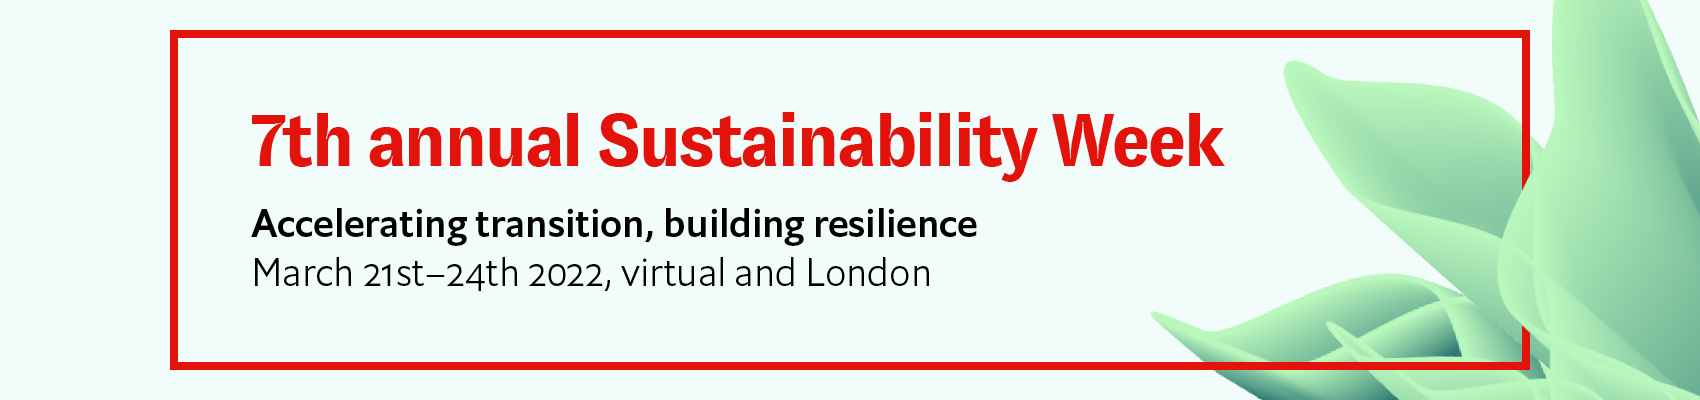 Sustainability Week UK